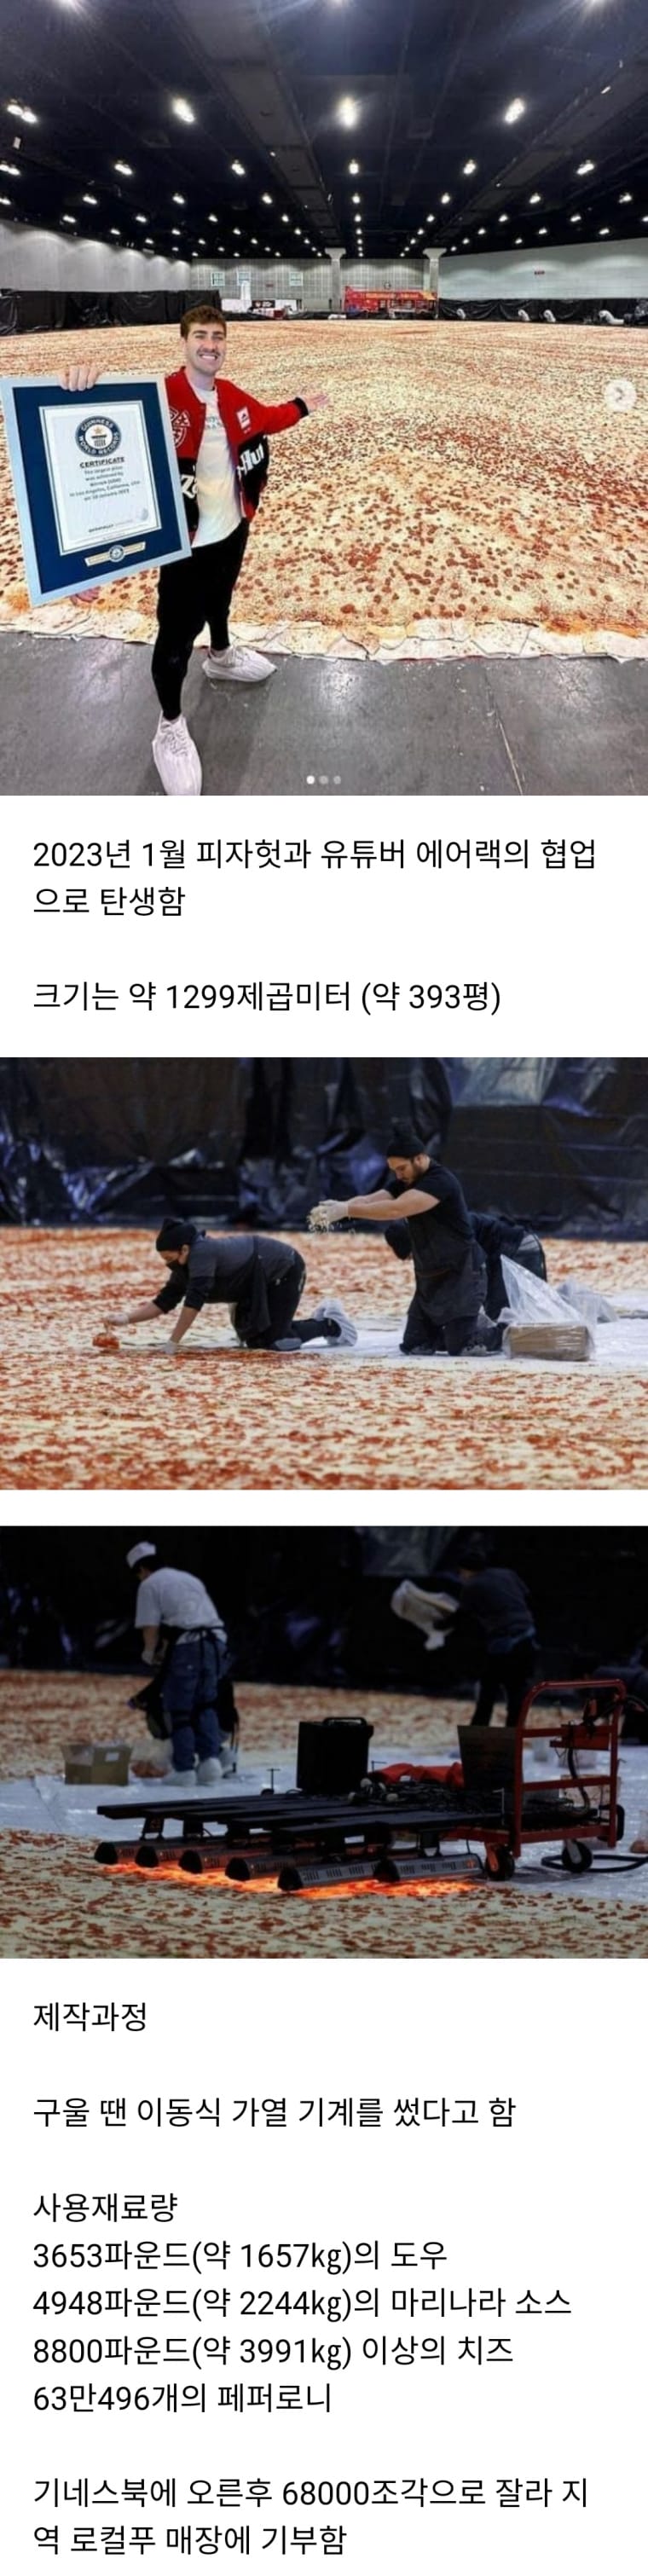 13 세계에서 가장 큰 피자.png